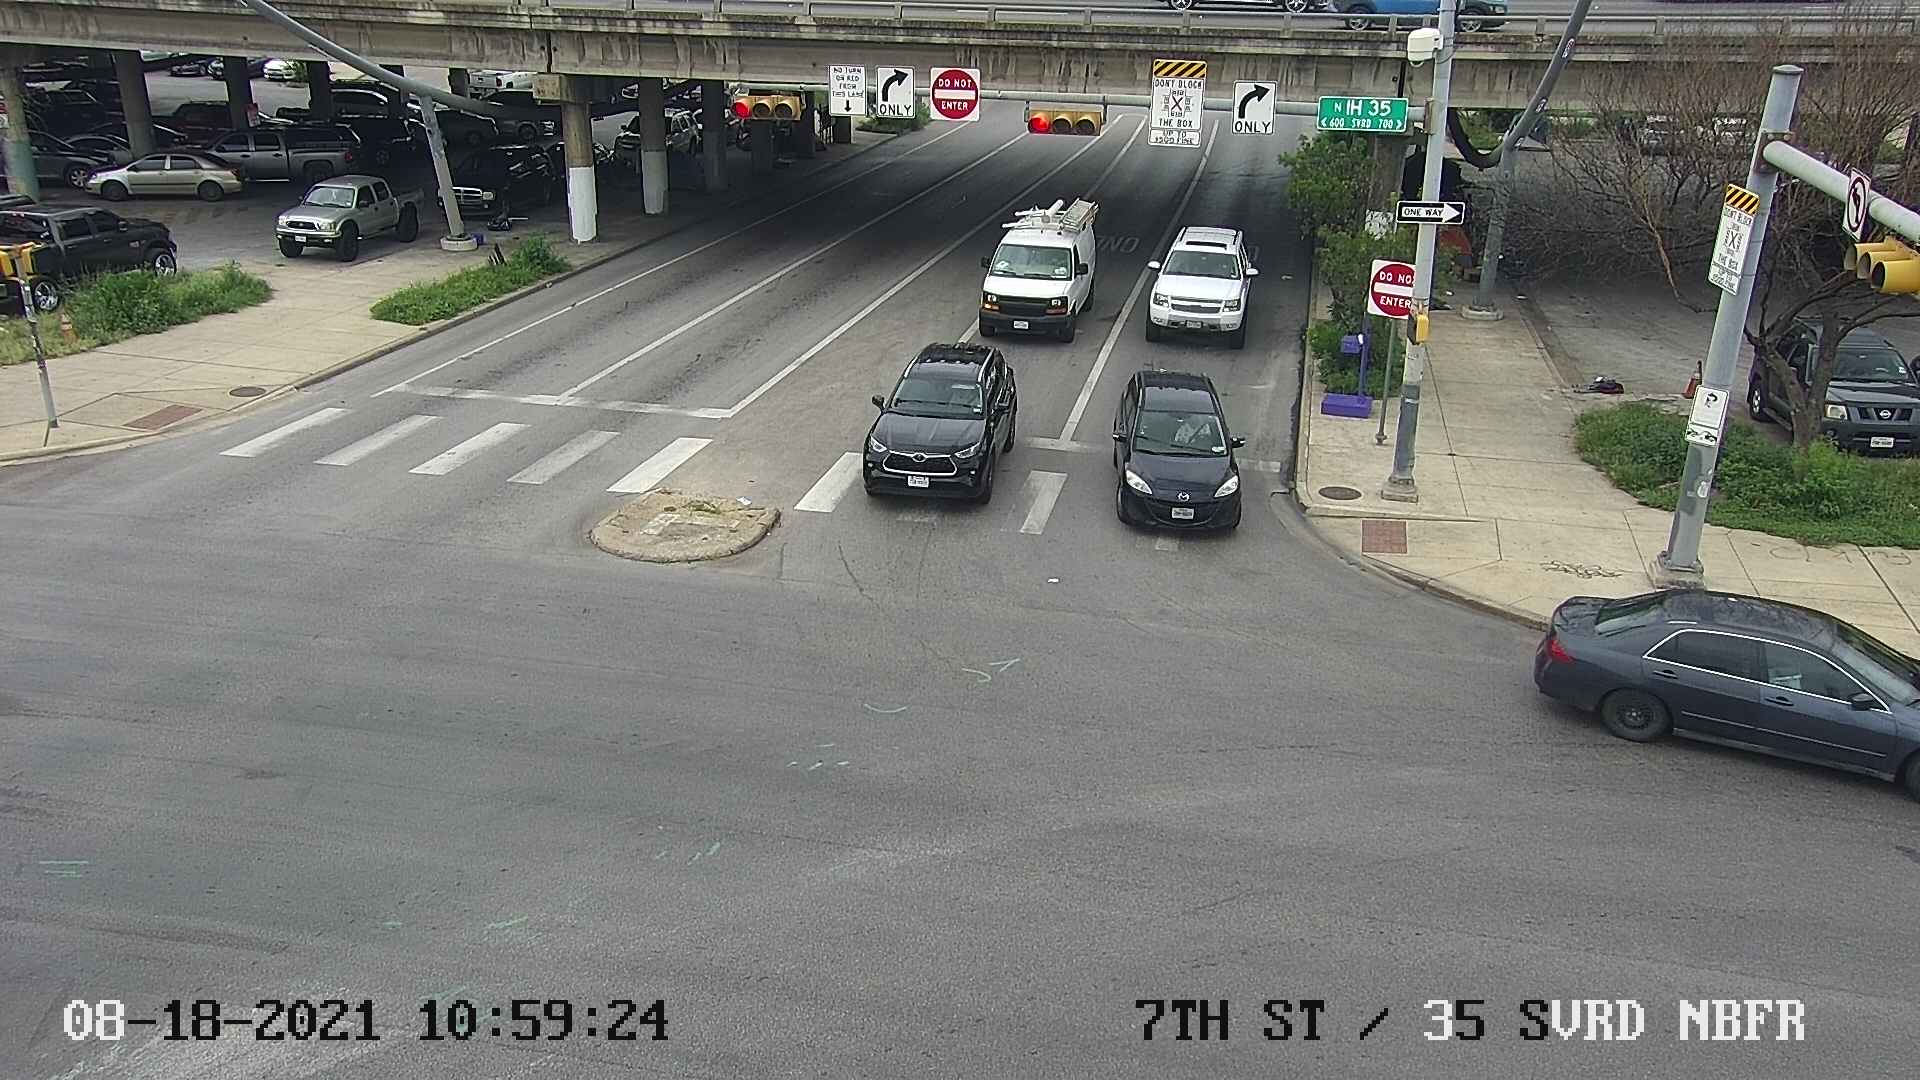  7TH ST / 35 SVRD Traffic Camera